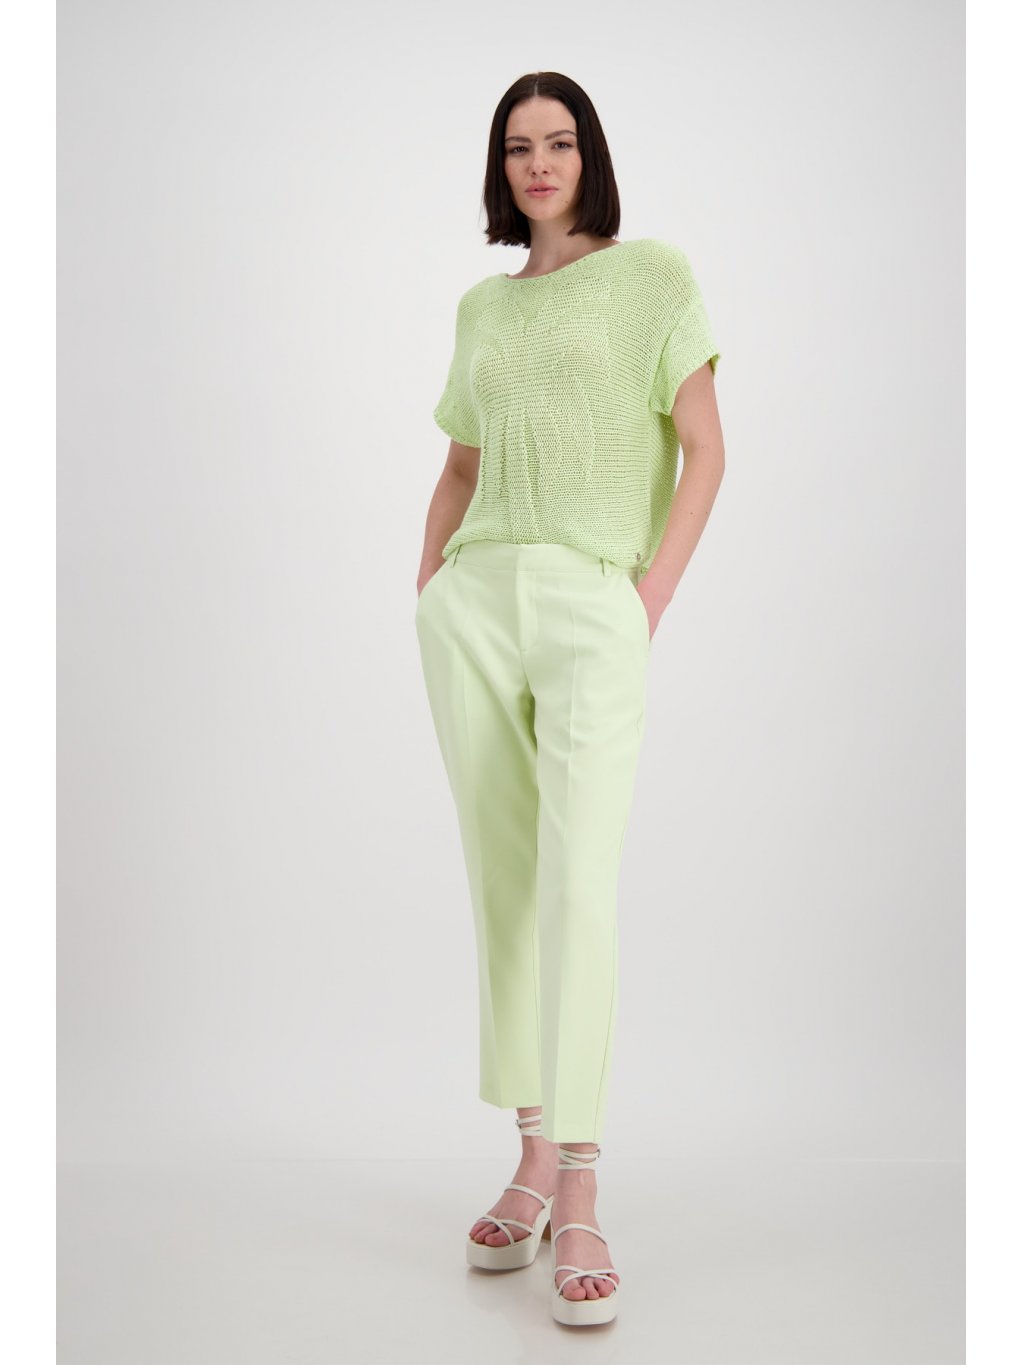 Kalhoty Monari 8020 jemně zelené 